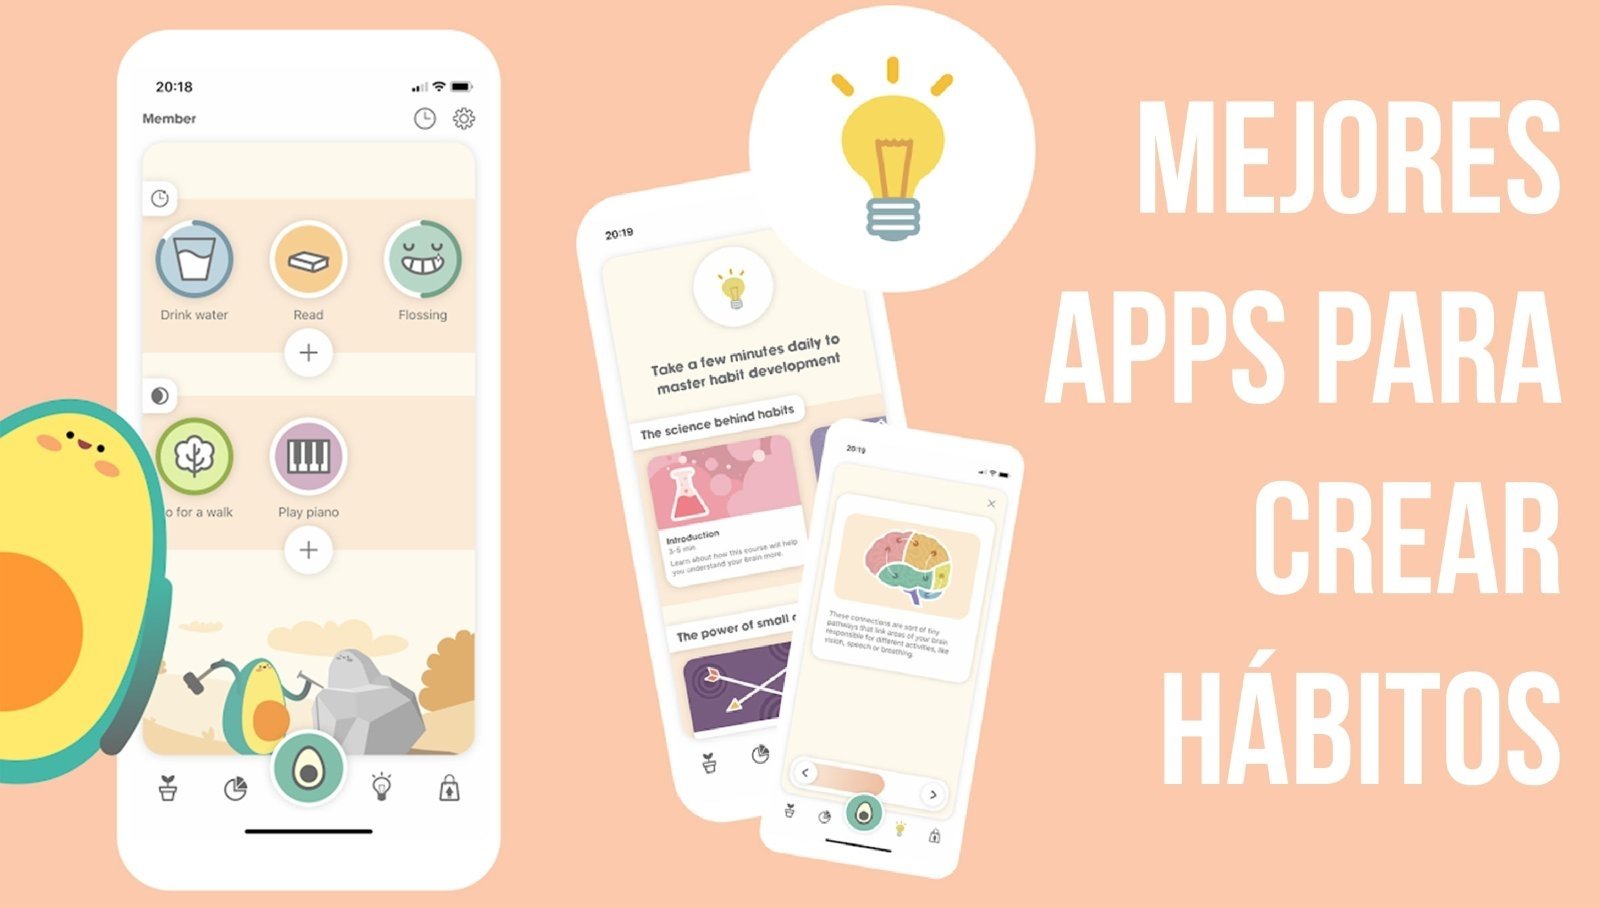 Mejores apps para crear hábitos en Android